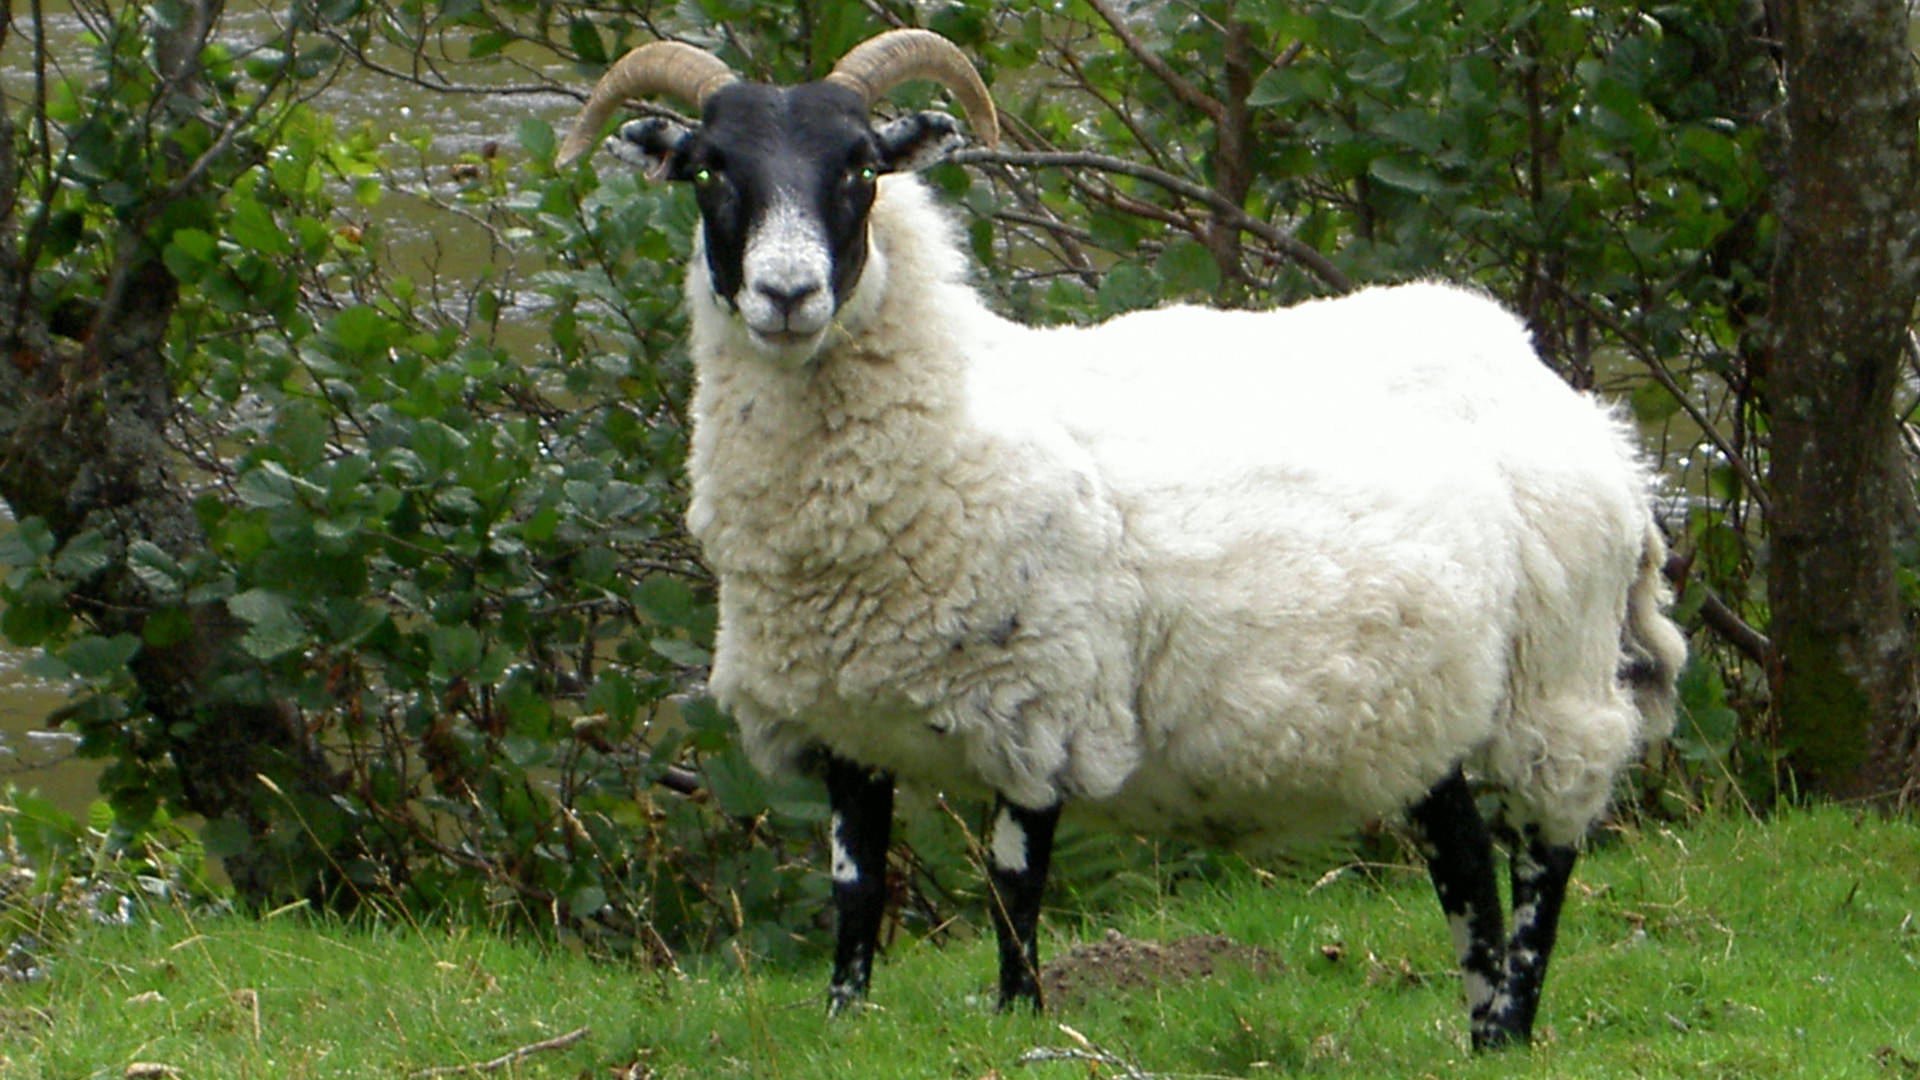 Caption: An Elegant Black-headed White Goat In High Resolution